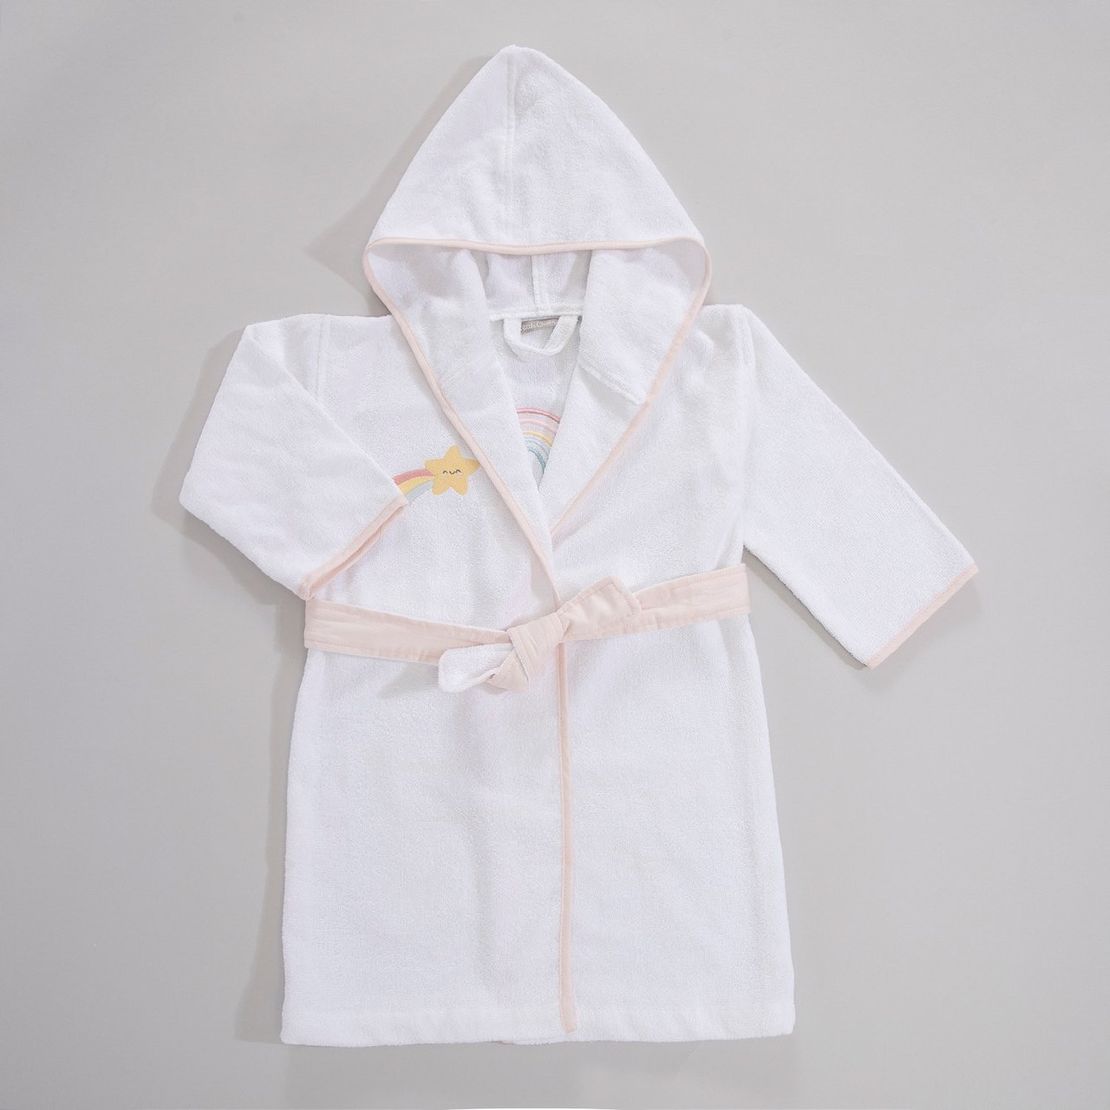 Дитячий махровий халат Rainbow, для дівчинки з аплікацією Веселка єдинорога 7-8 років, білий